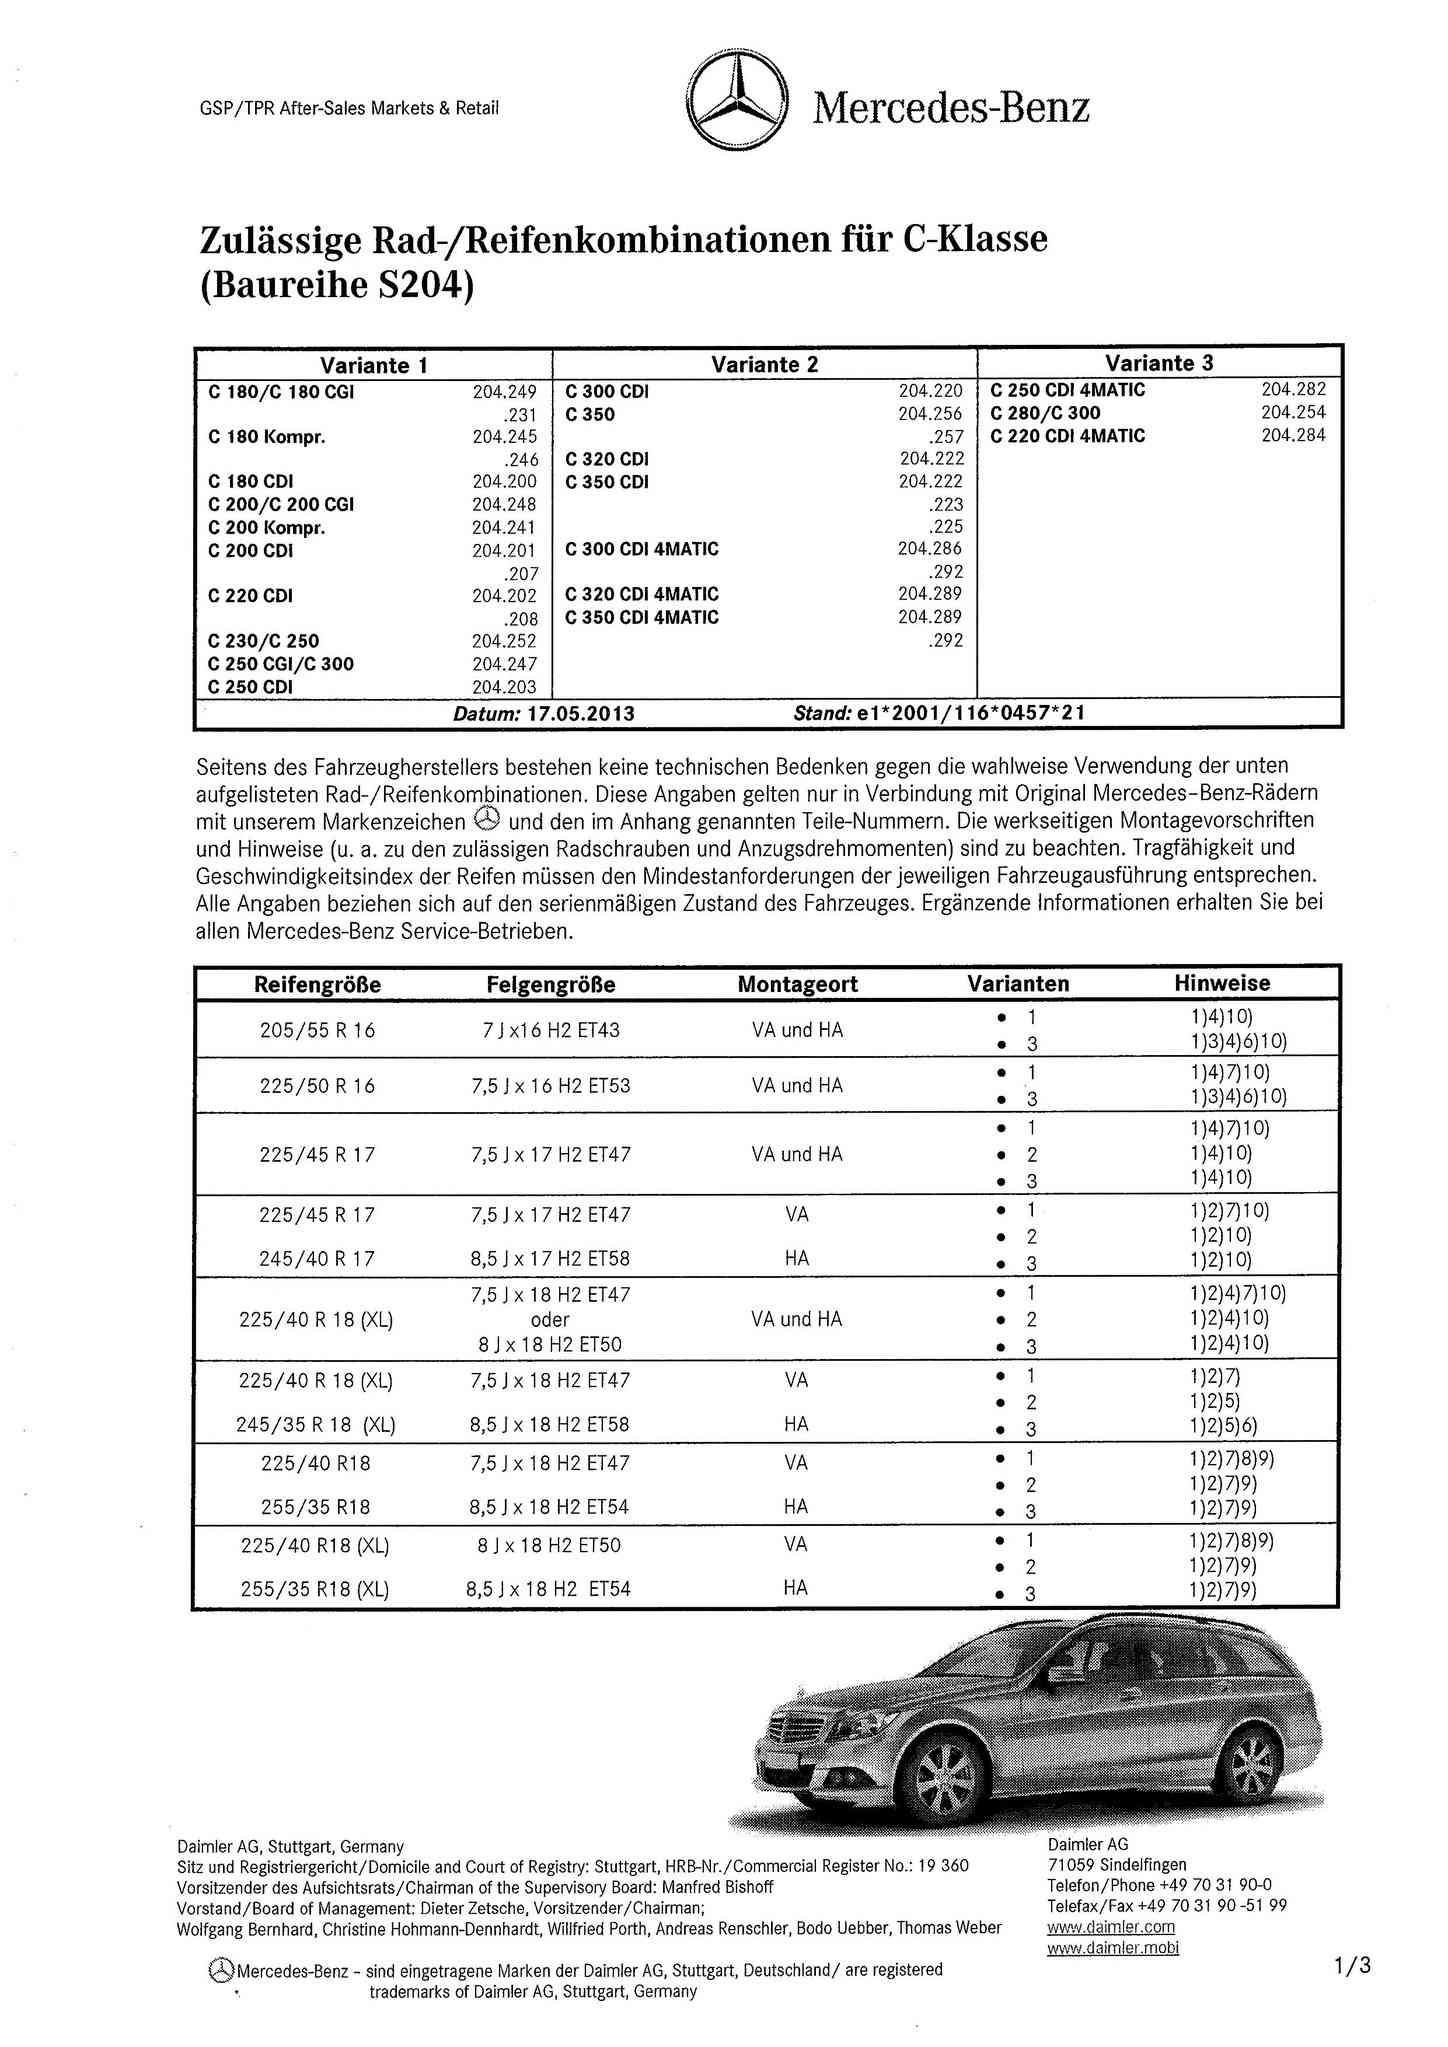 Pneus - (C/S/W204): Medidas oficiais das rodas e pneus 0001_121